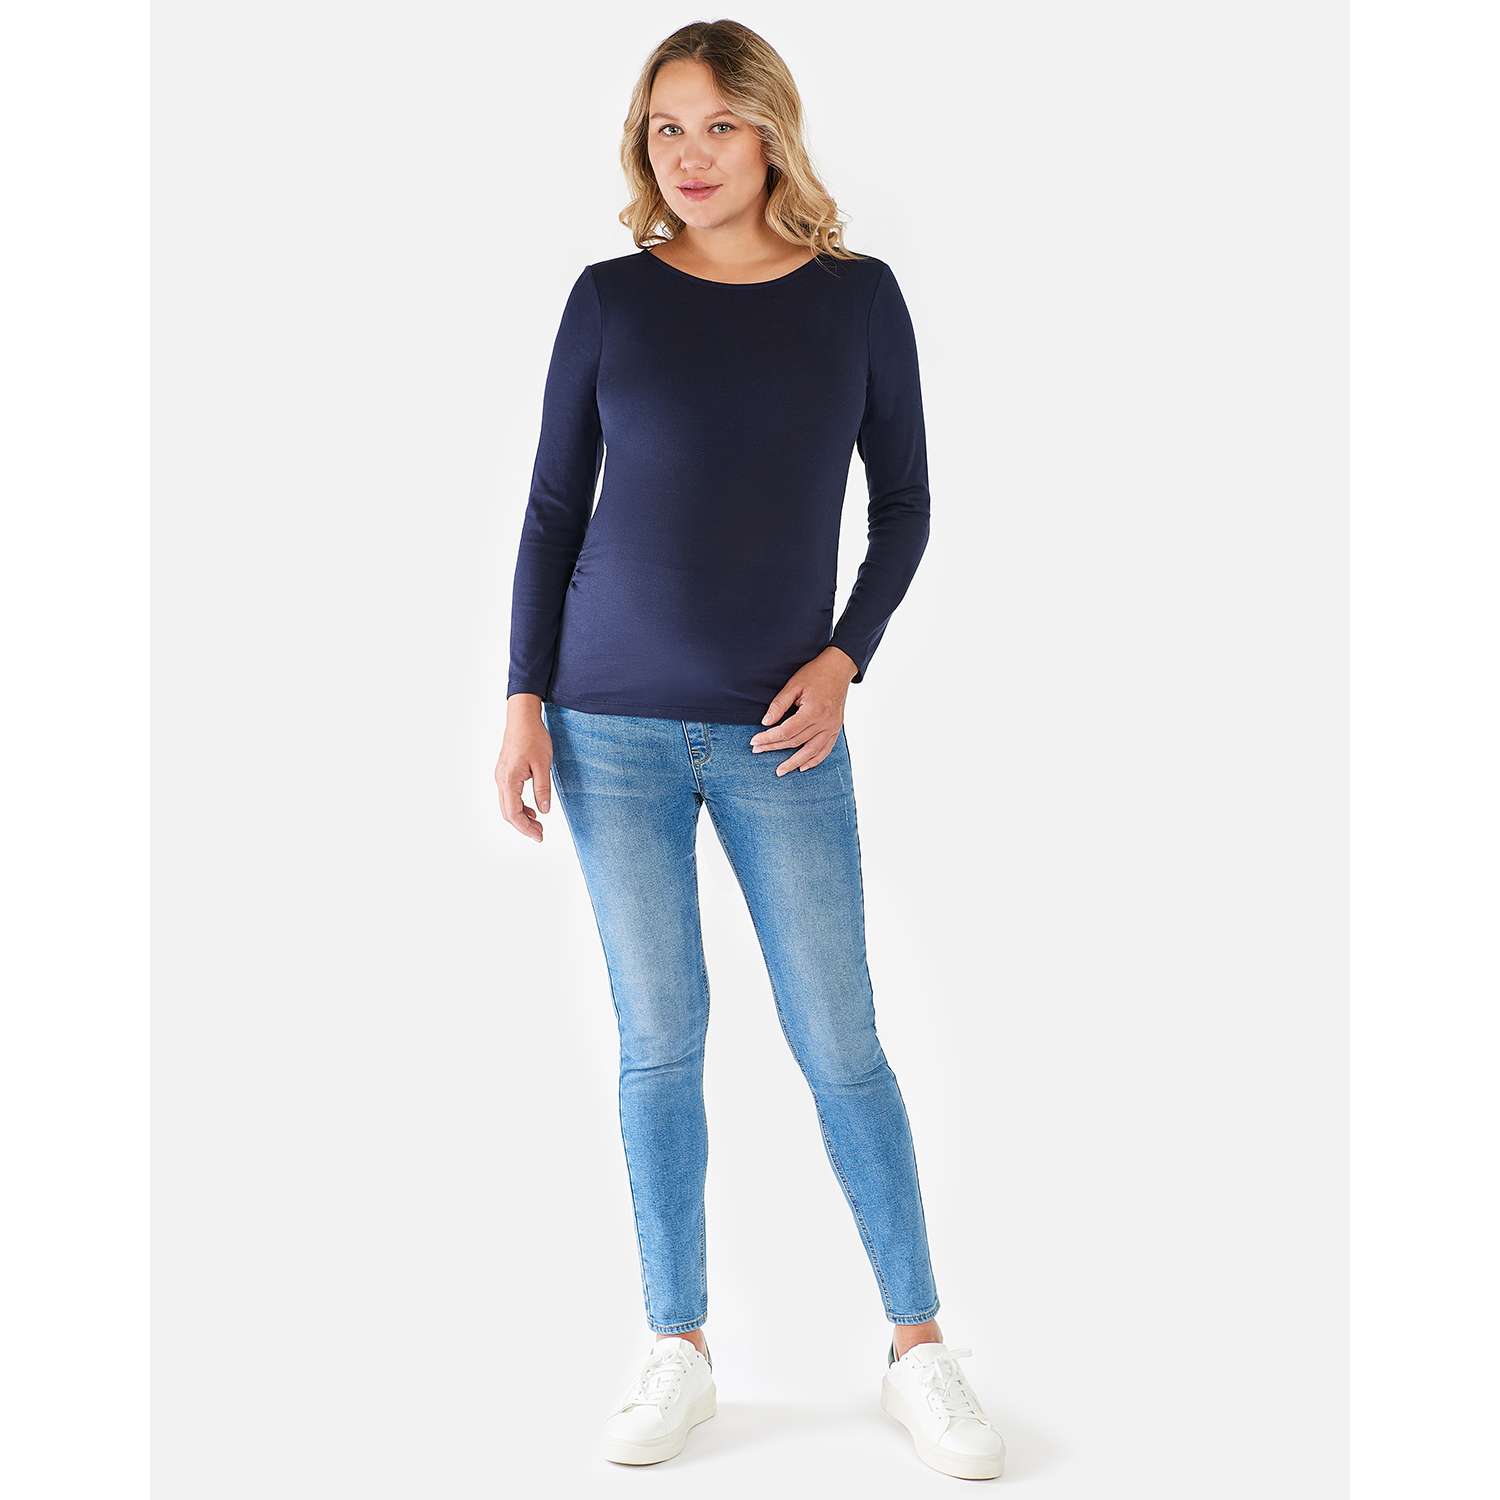 Утеплённые джинсы для беременных Futurino Mama AW21-21-mat-55 - фото 1